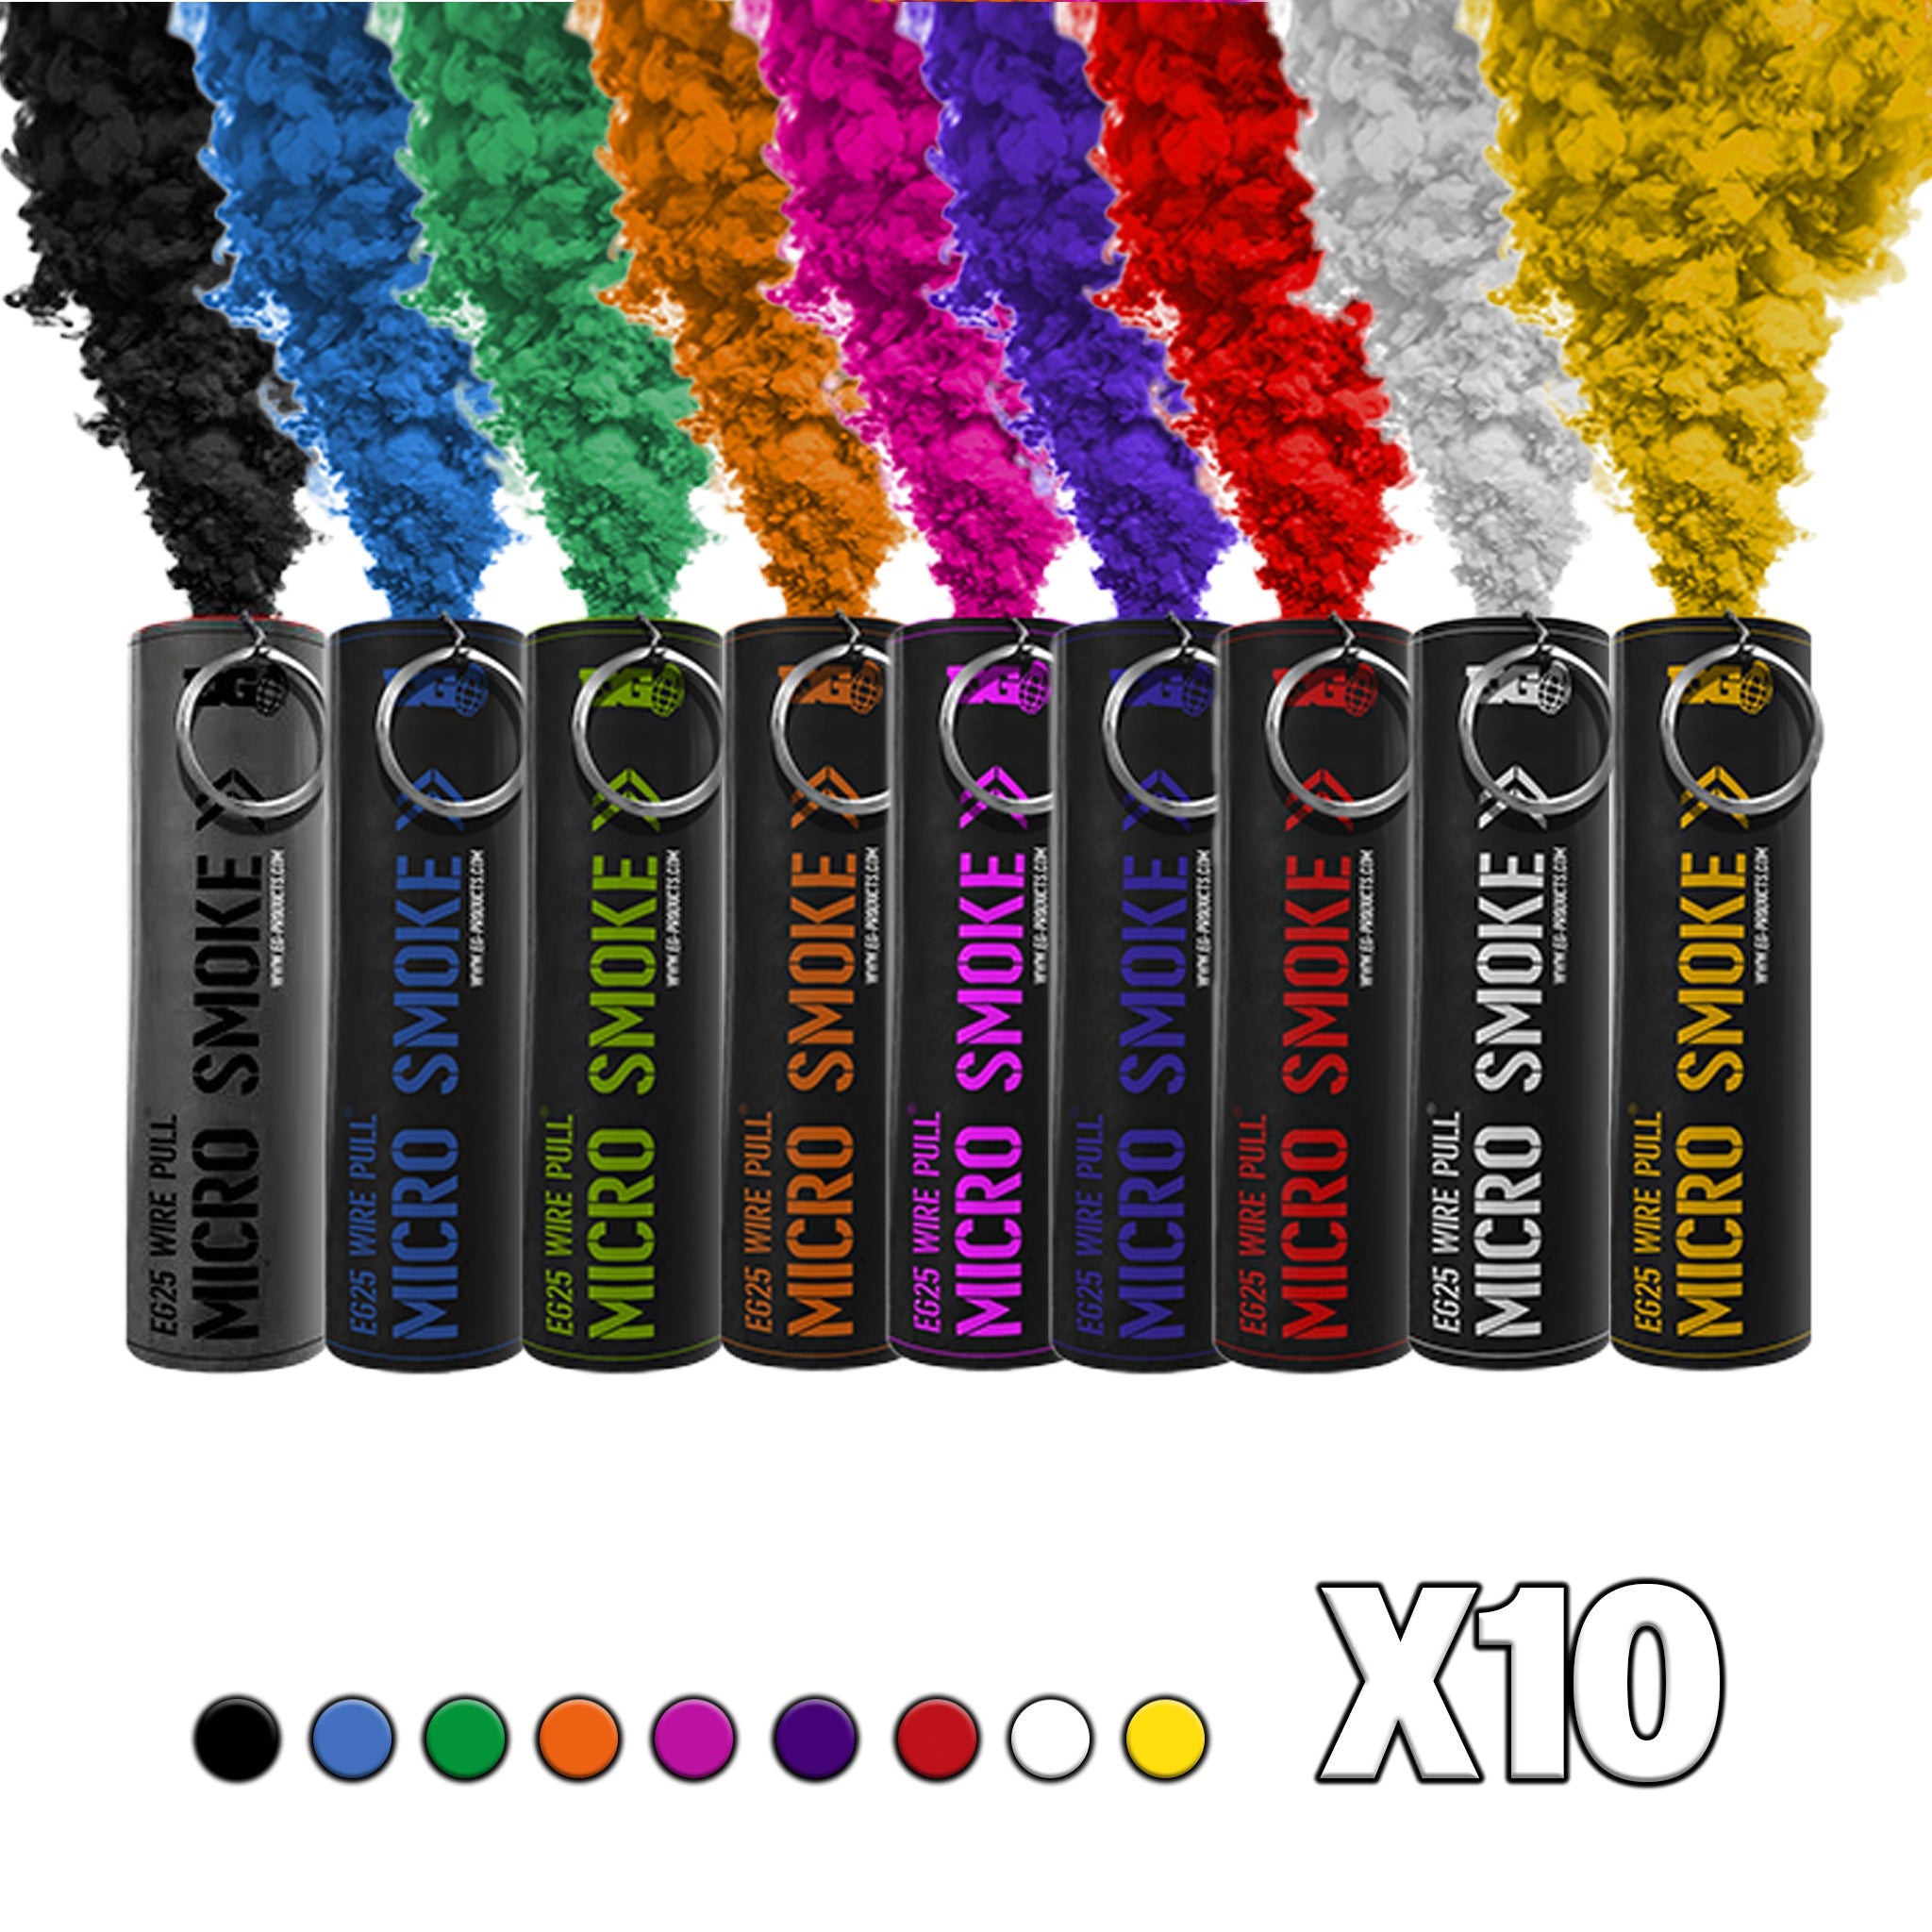 EG25 Smoke Grenades - Multicolour Pack